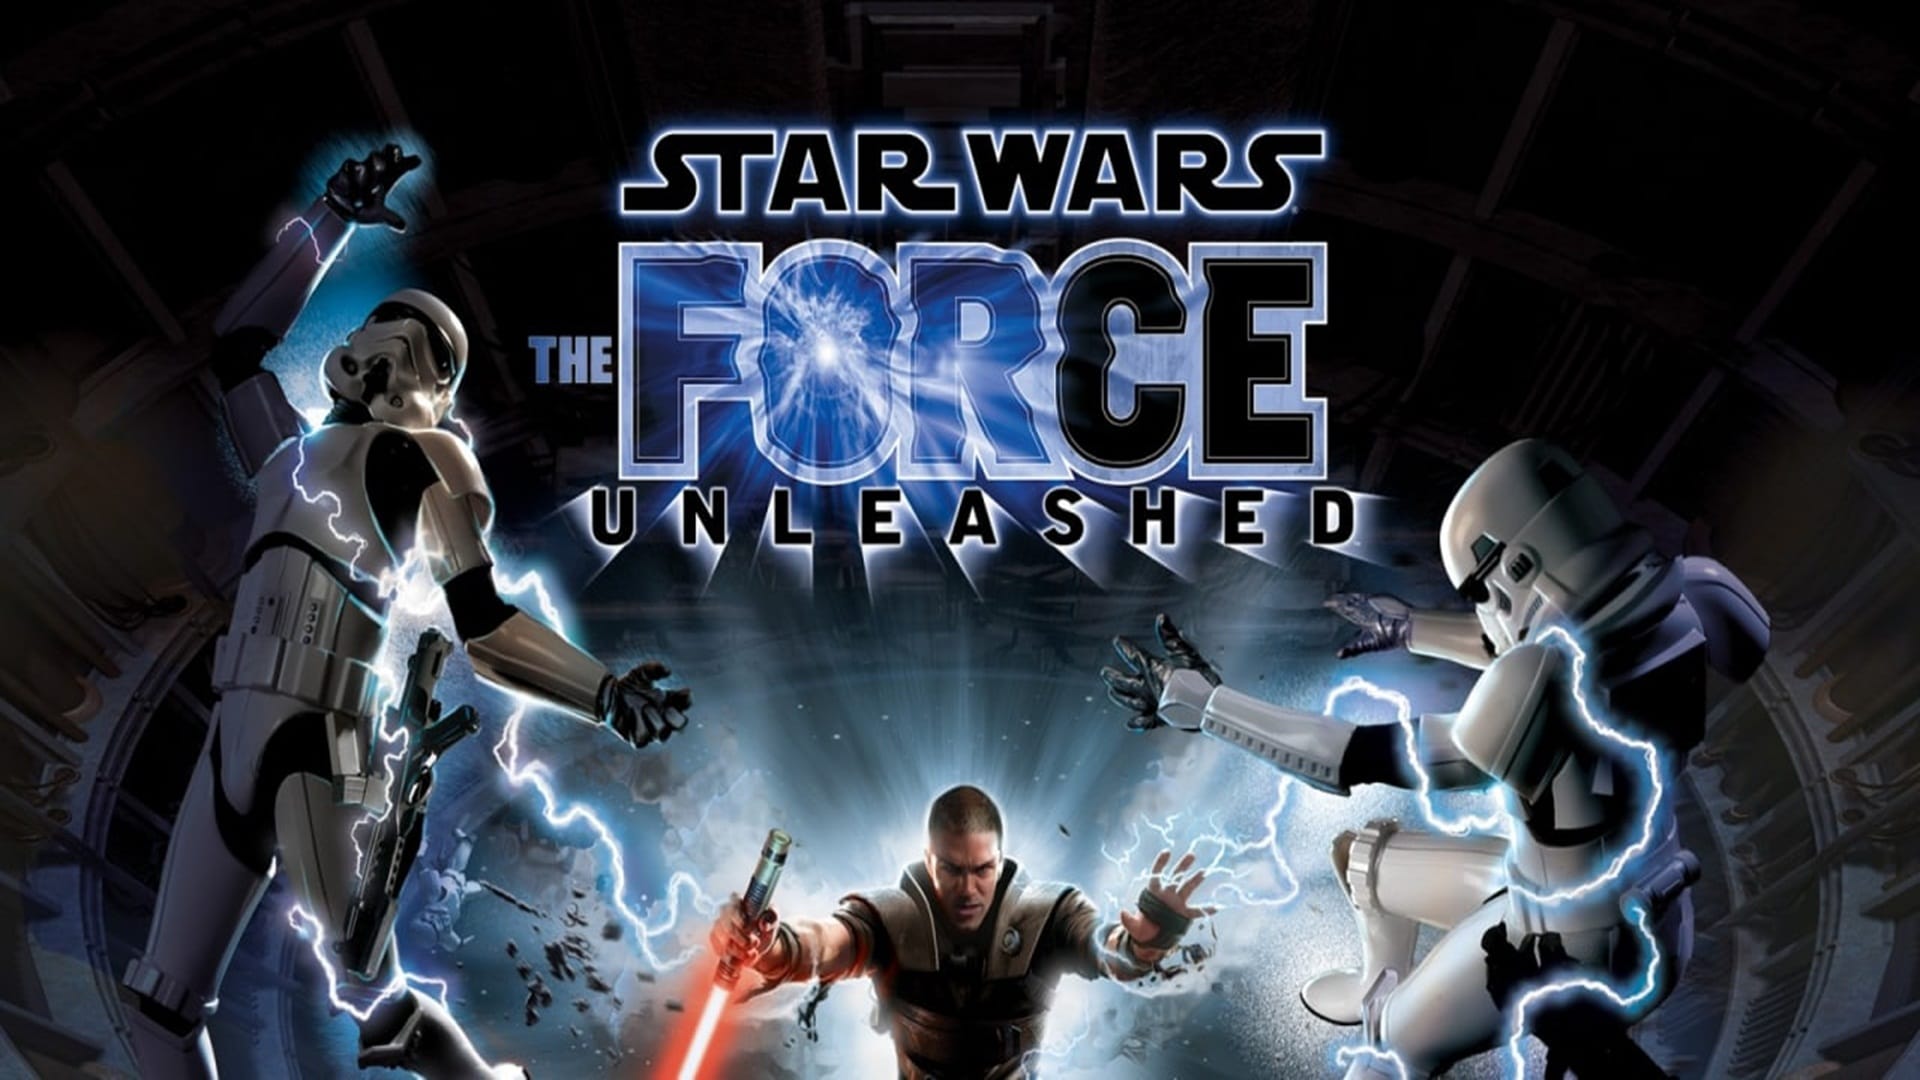 Star Wars The Force Unleashed tendrá lanzamiento en físico de edición limitada en Nintendo Switch, GamersRD